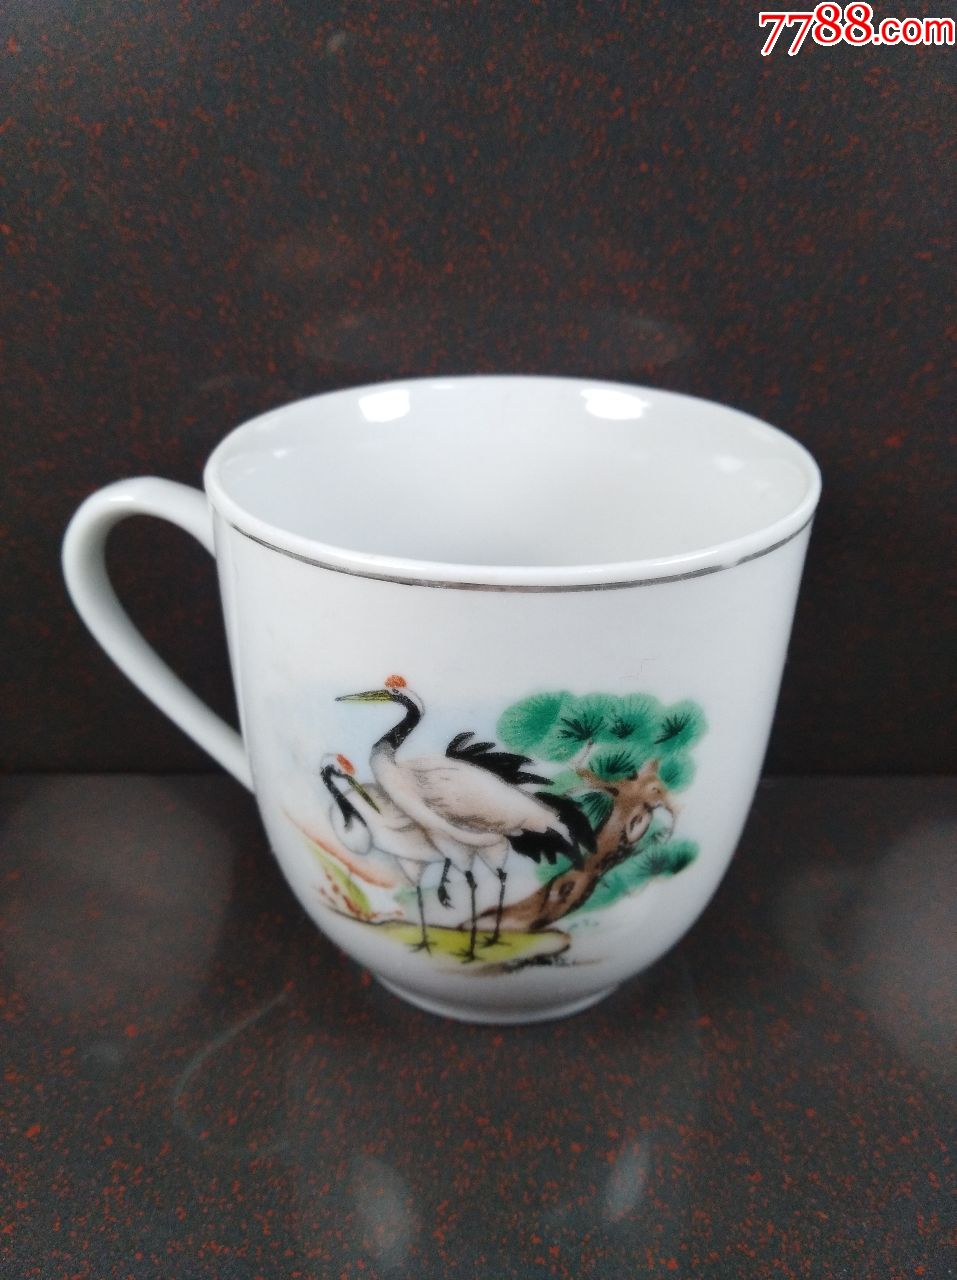 中国界牌釉下彩双鹤茶杯